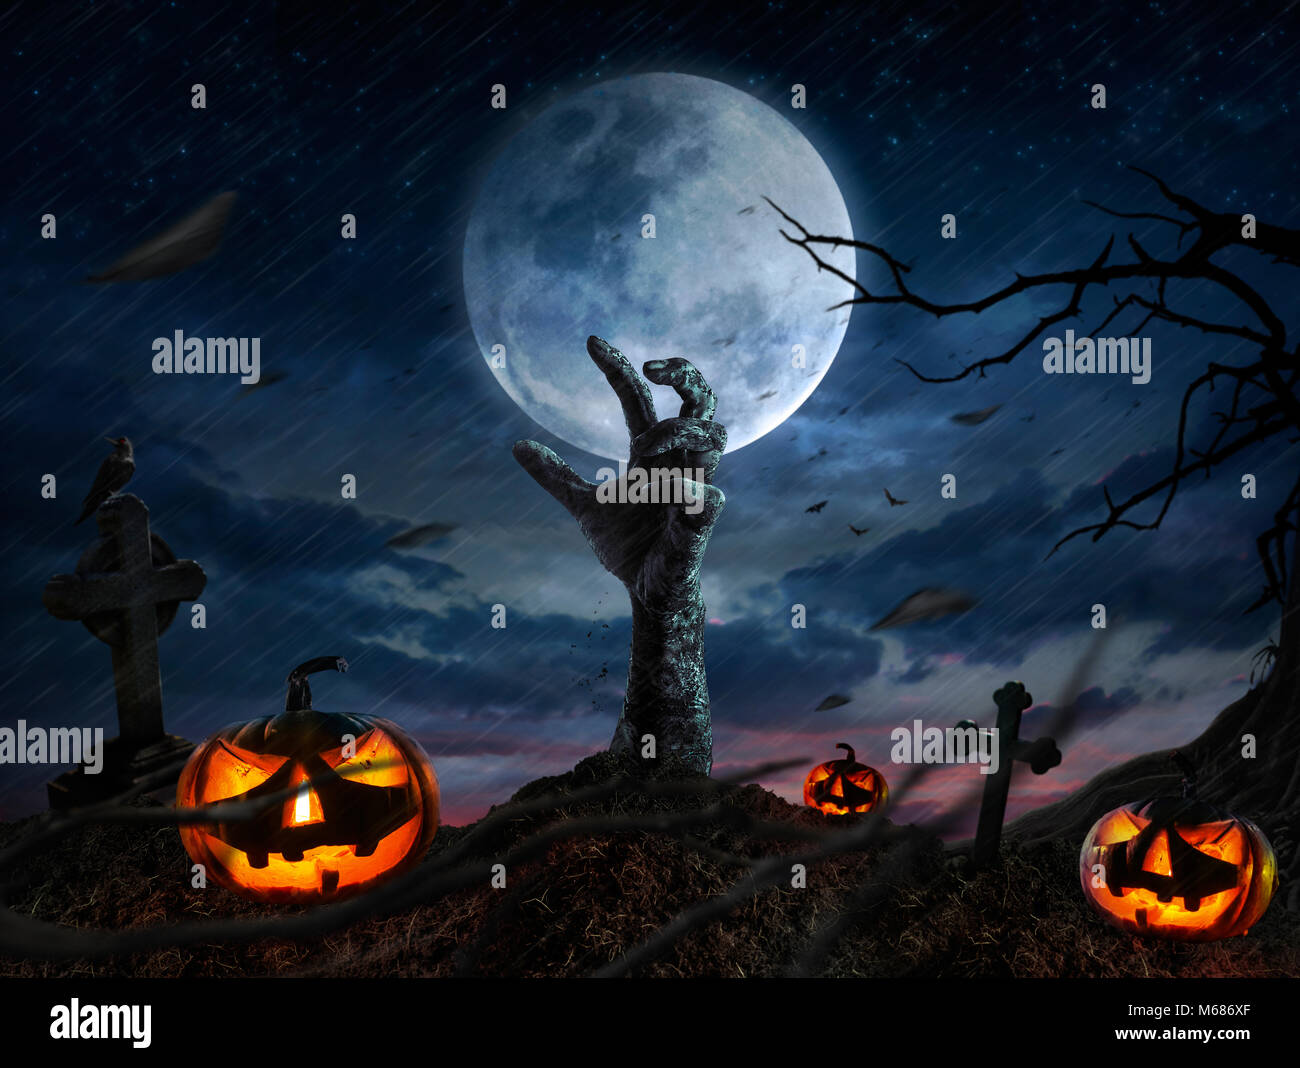 Zombie hands rising in dark Halloween night. Stock Photo